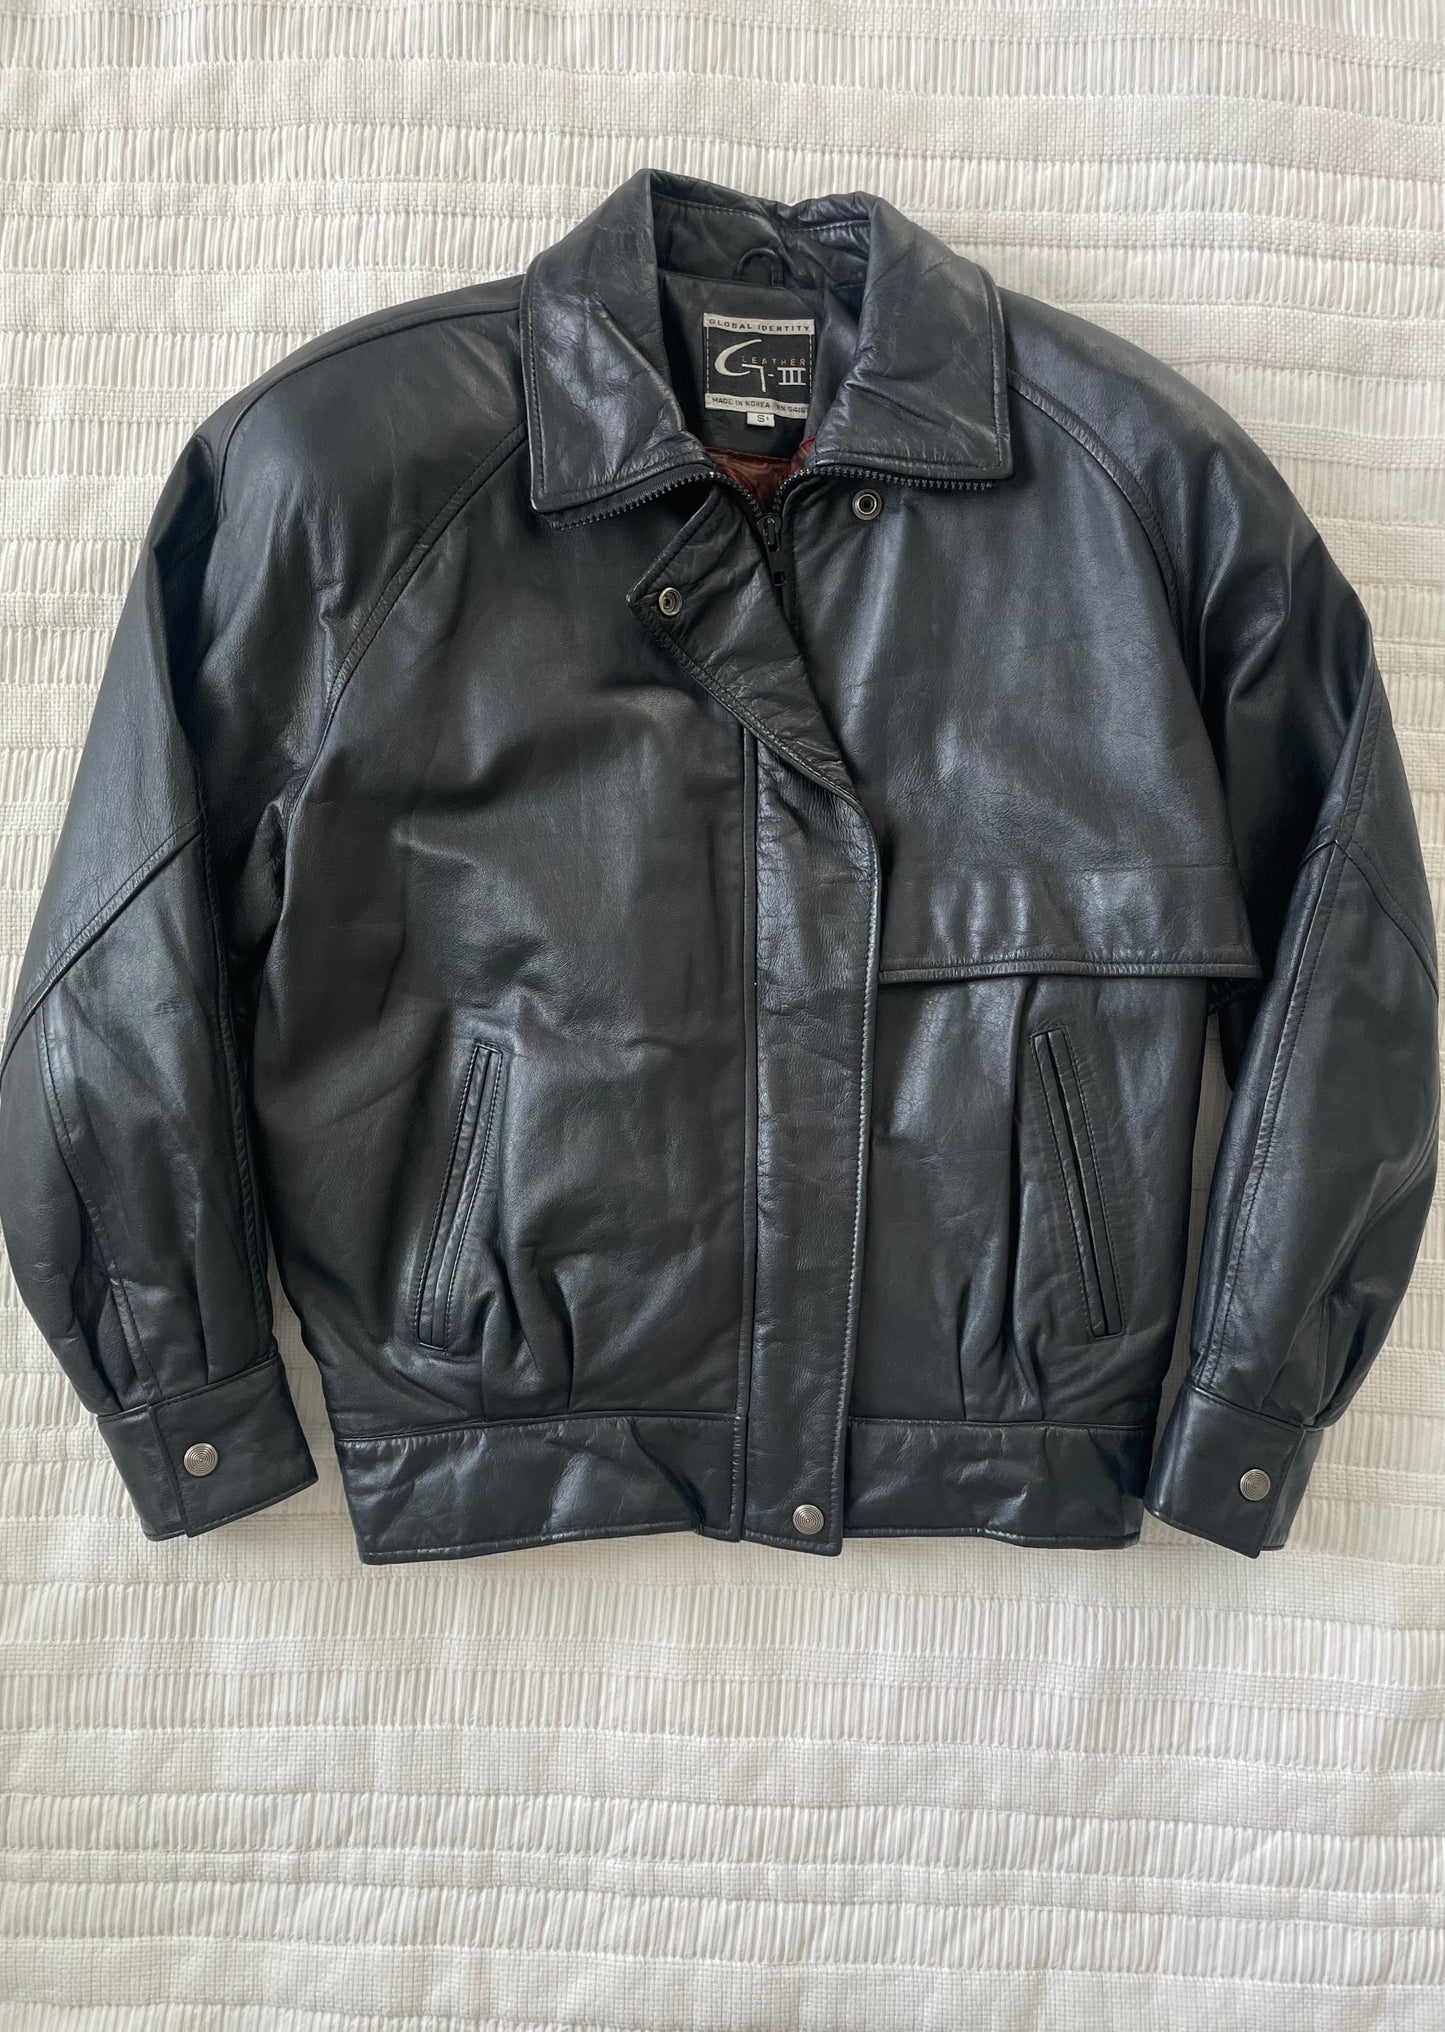 Leather Black Bomber Jacket